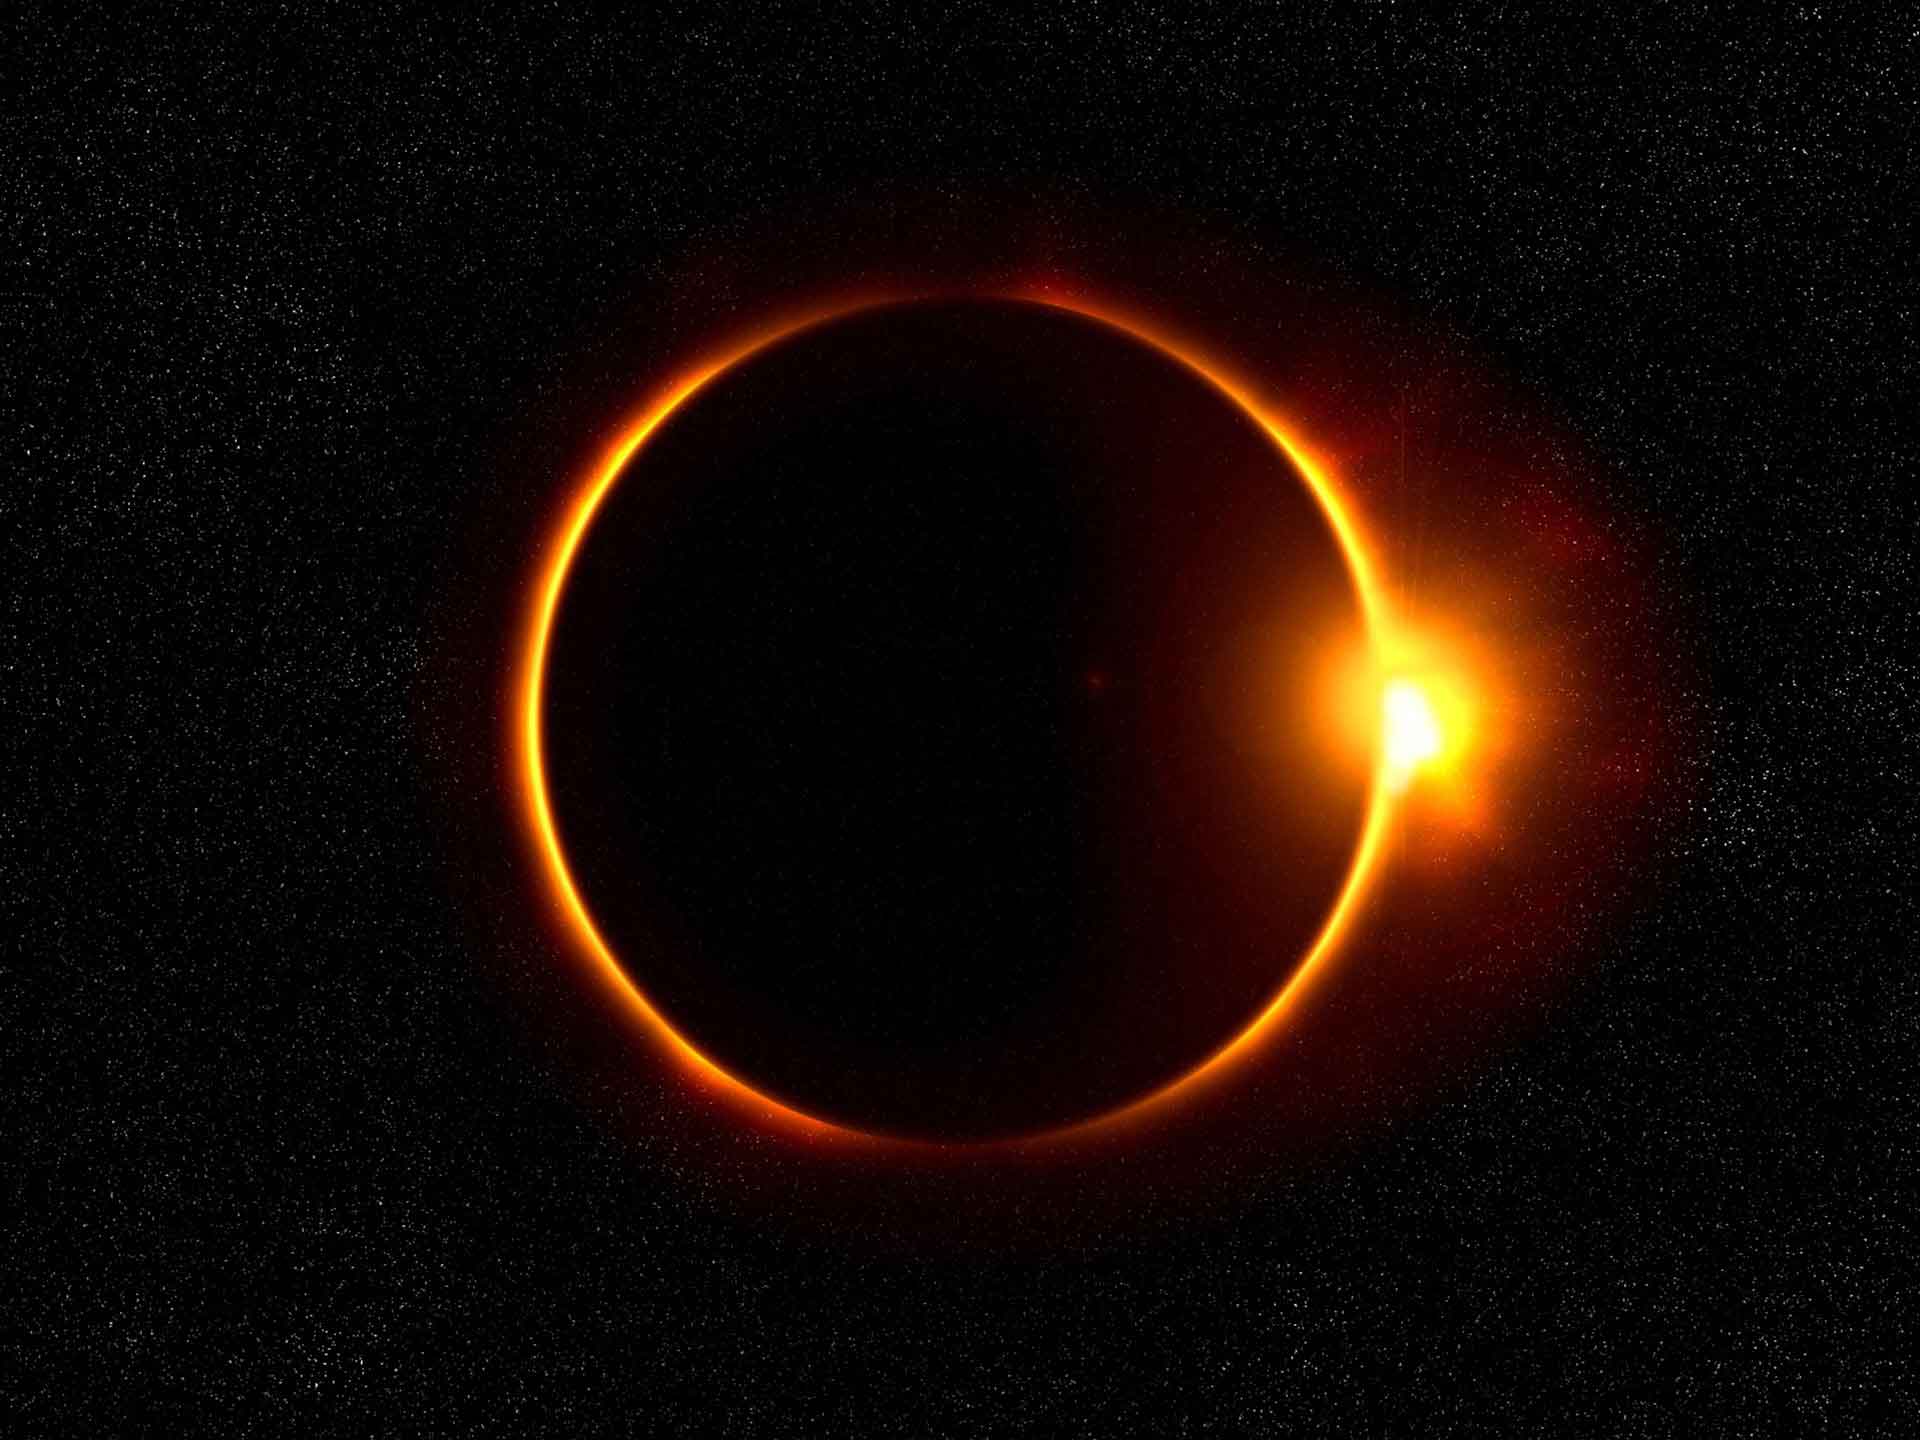 Solar eclipse: Eye health warning